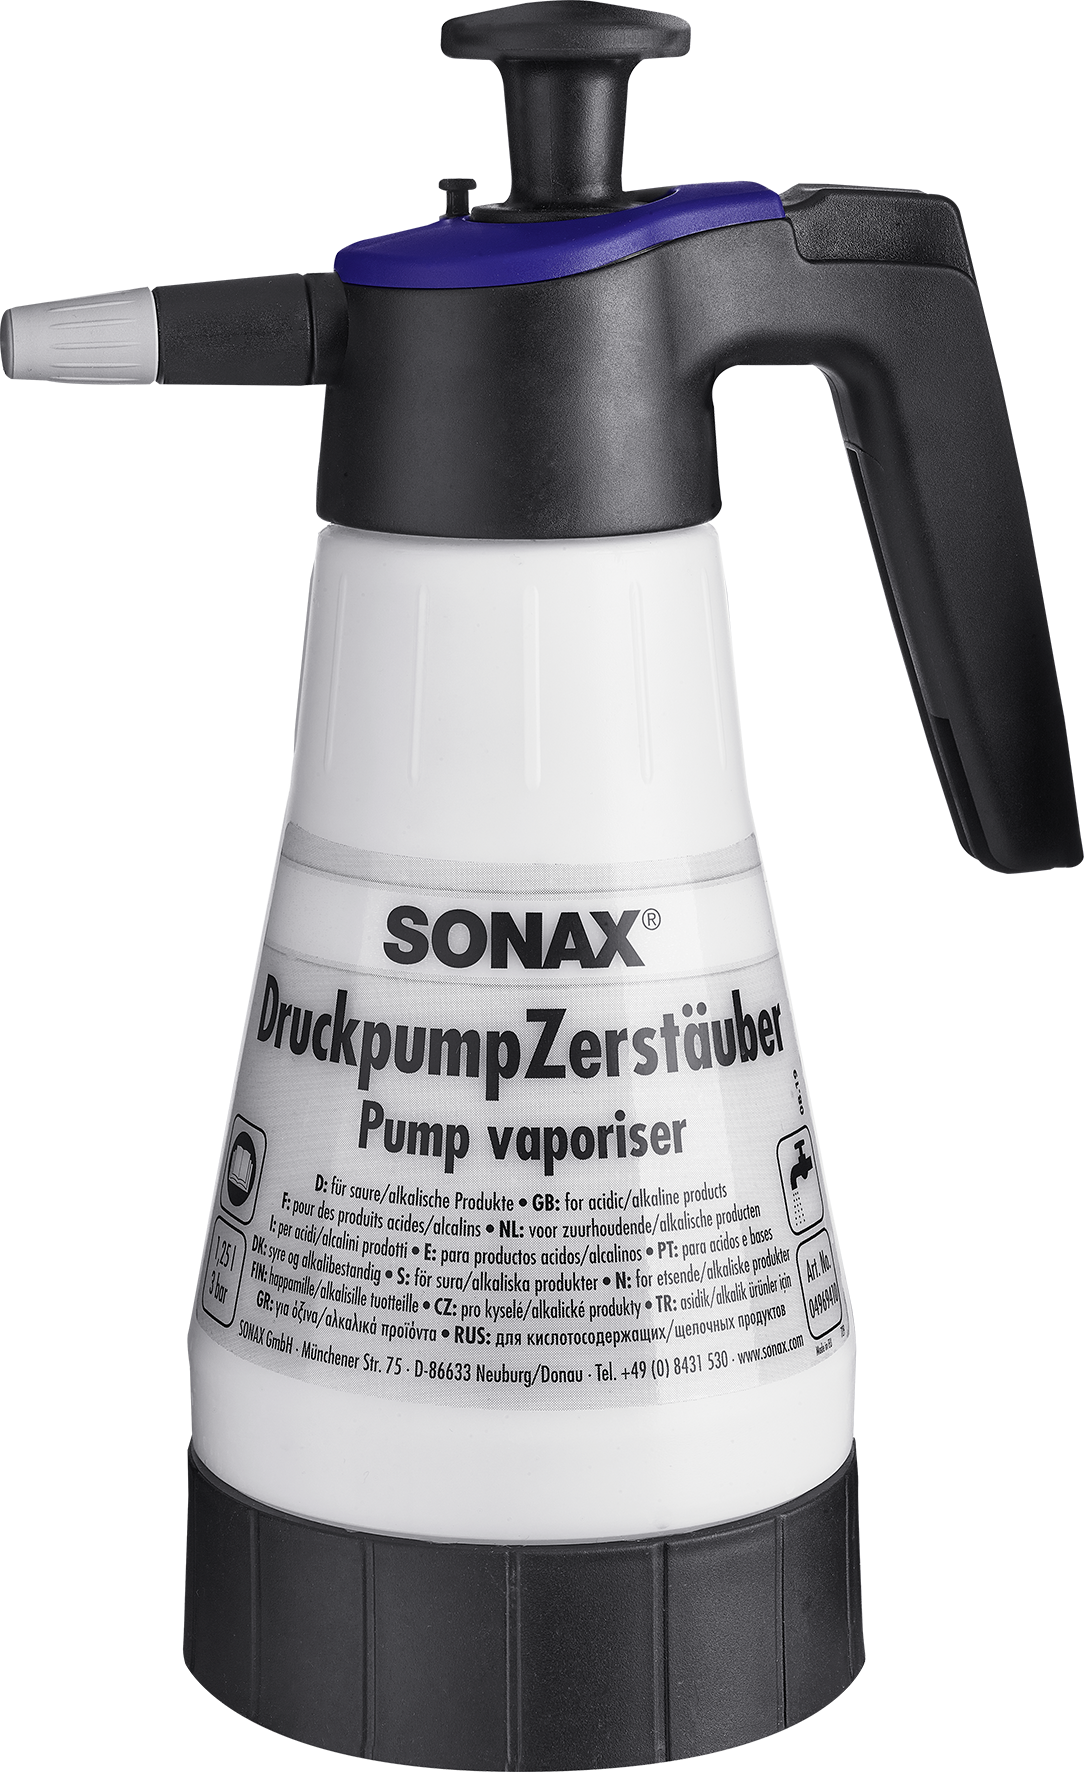 SONAX Druckpumpzerstäuber - Weigola Hygienevertrieb